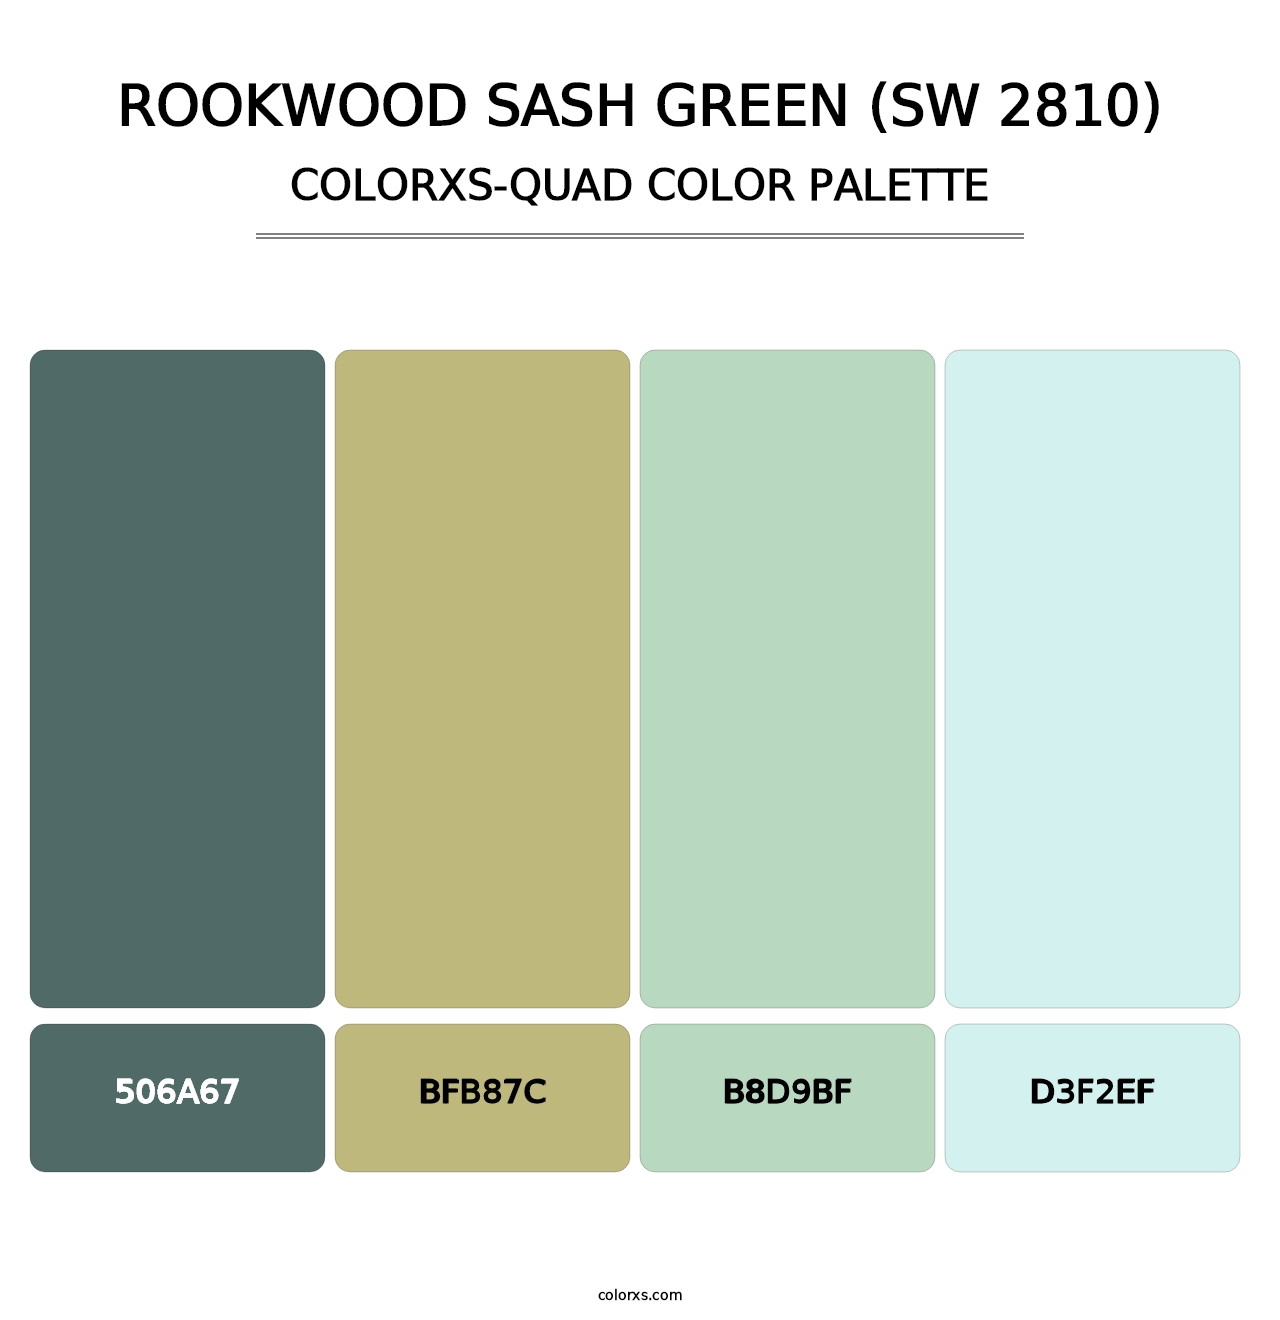 Rookwood Sash Green (SW 2810) - Colorxs Quad Palette